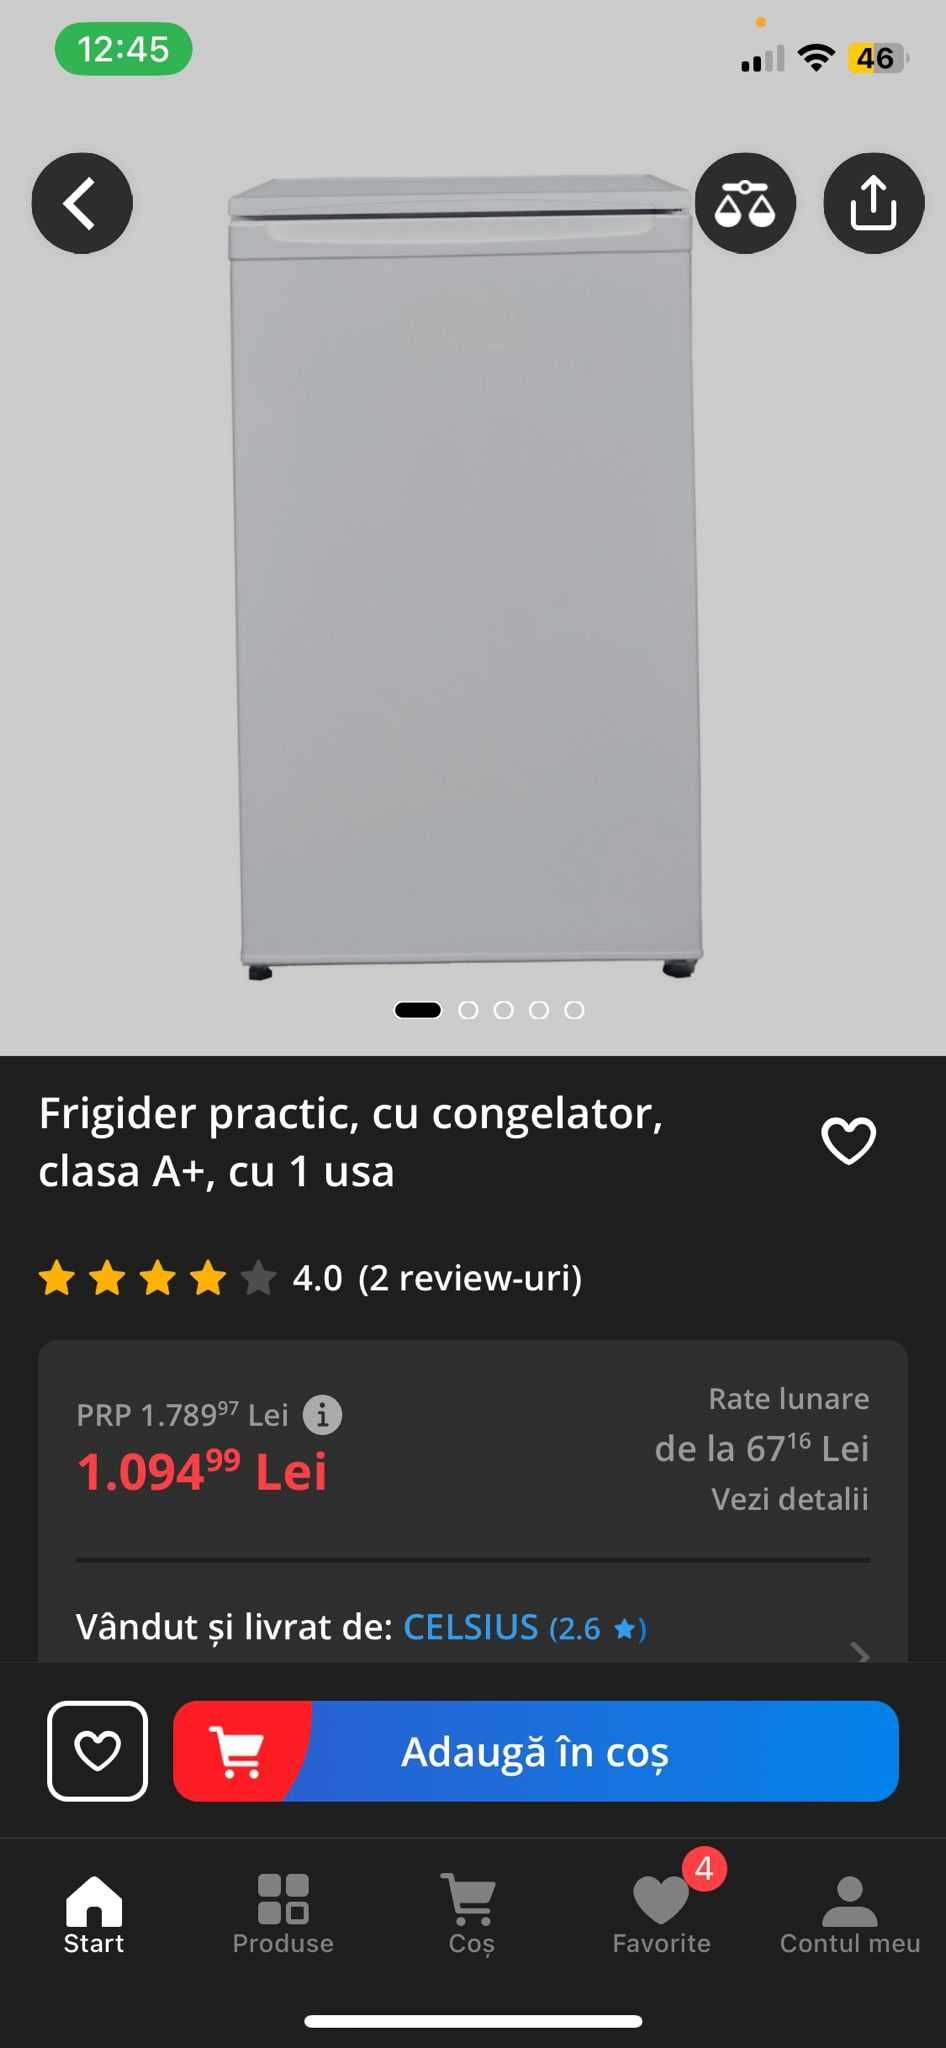 Frigider practic, cu congelator, clasa A+, cu 1 usa